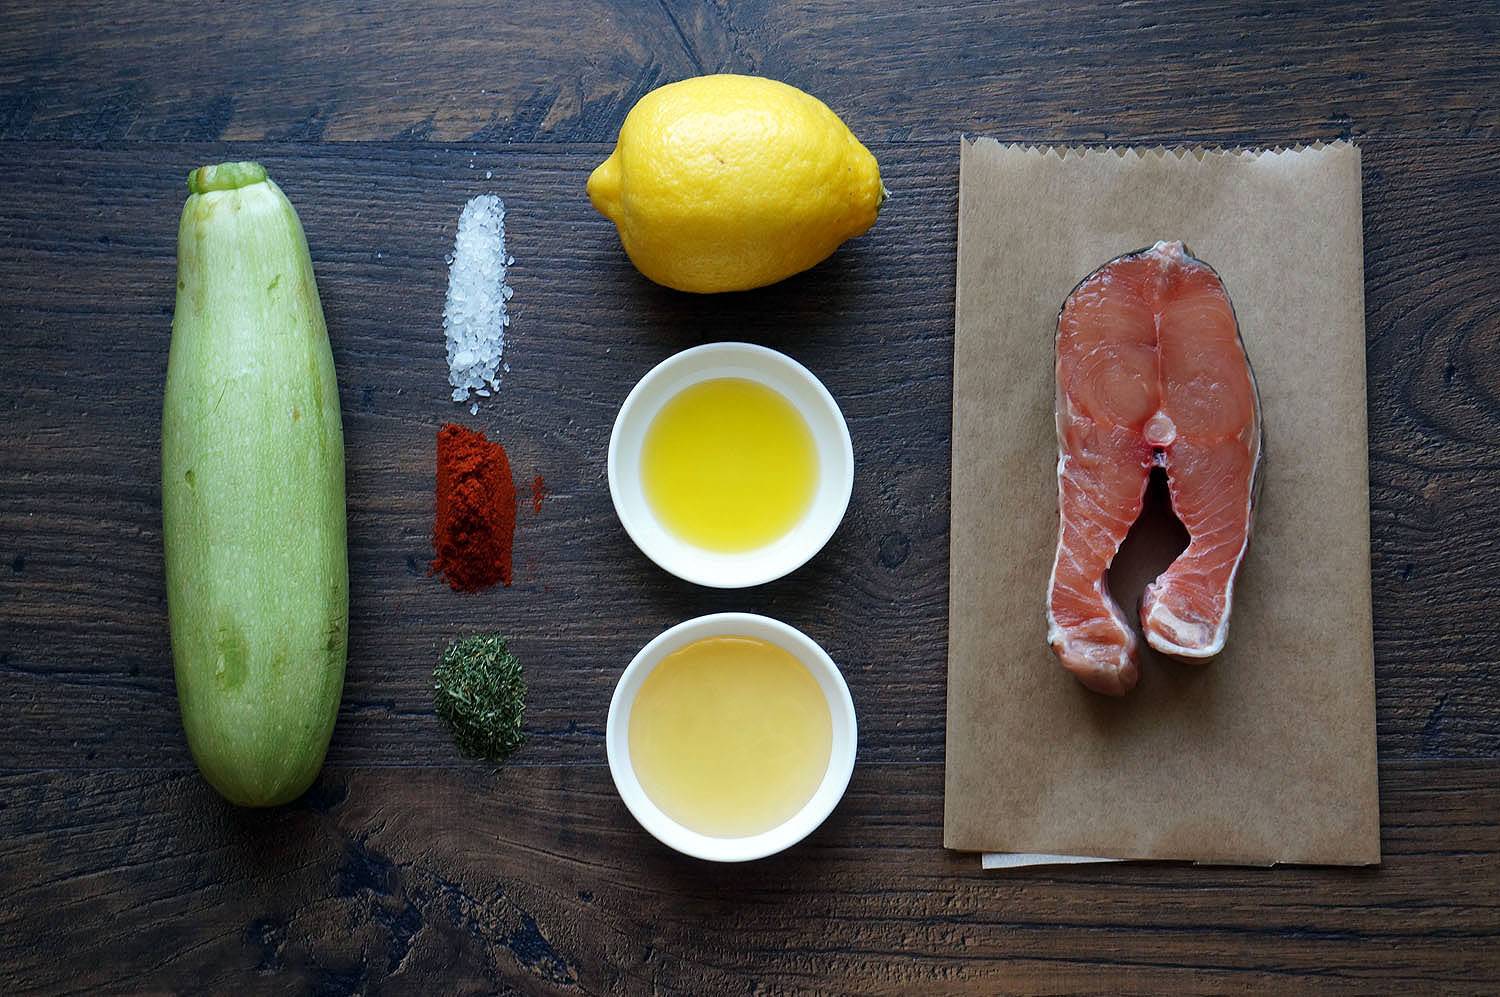 Шашлык из лосося с овощами, пошаговый фото рецепт, кулинарный блог, интернет-магазин, andychef.ru